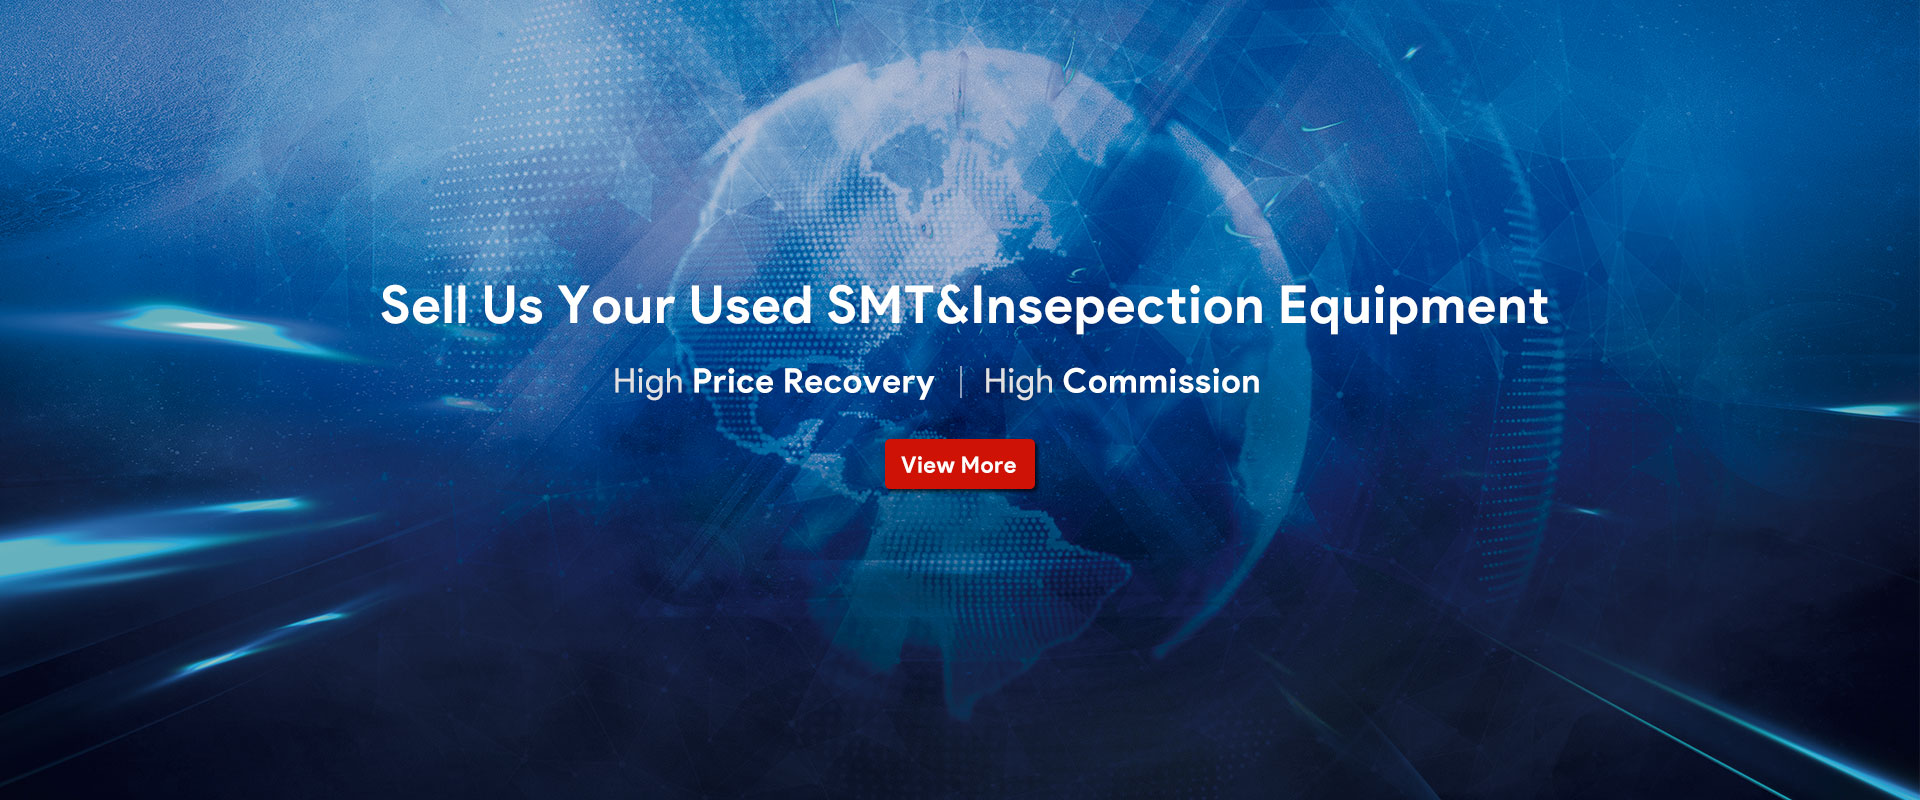 중고 SMT & Insepection 장비를 판매하십시오.